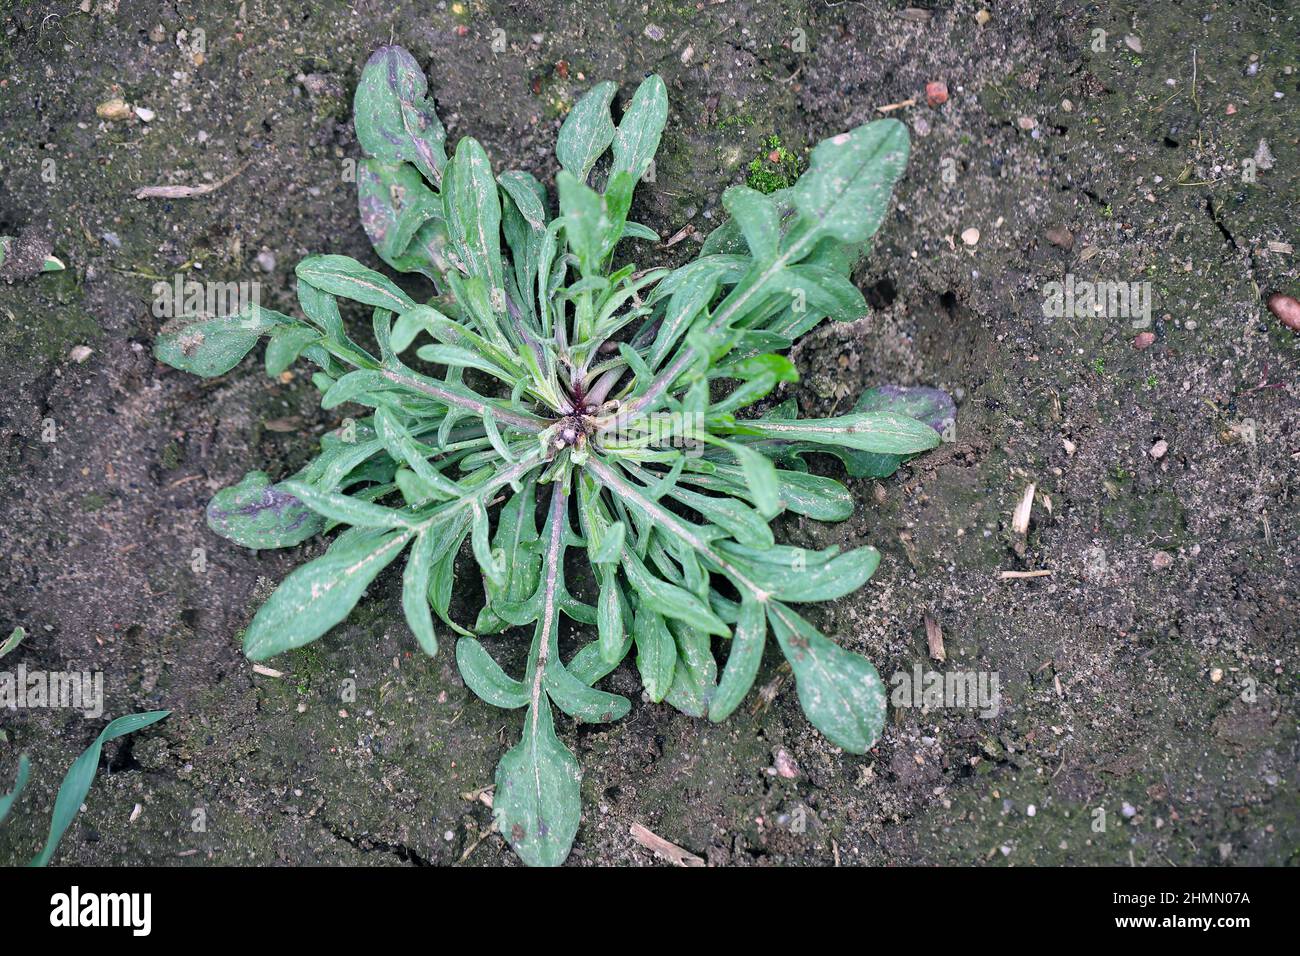 Centaurea cyanus, comunemente noto come fiore di mais o pulsante di bachelor. Erbacce diffuse e comuni in colture agricole e orticole. Foto Stock